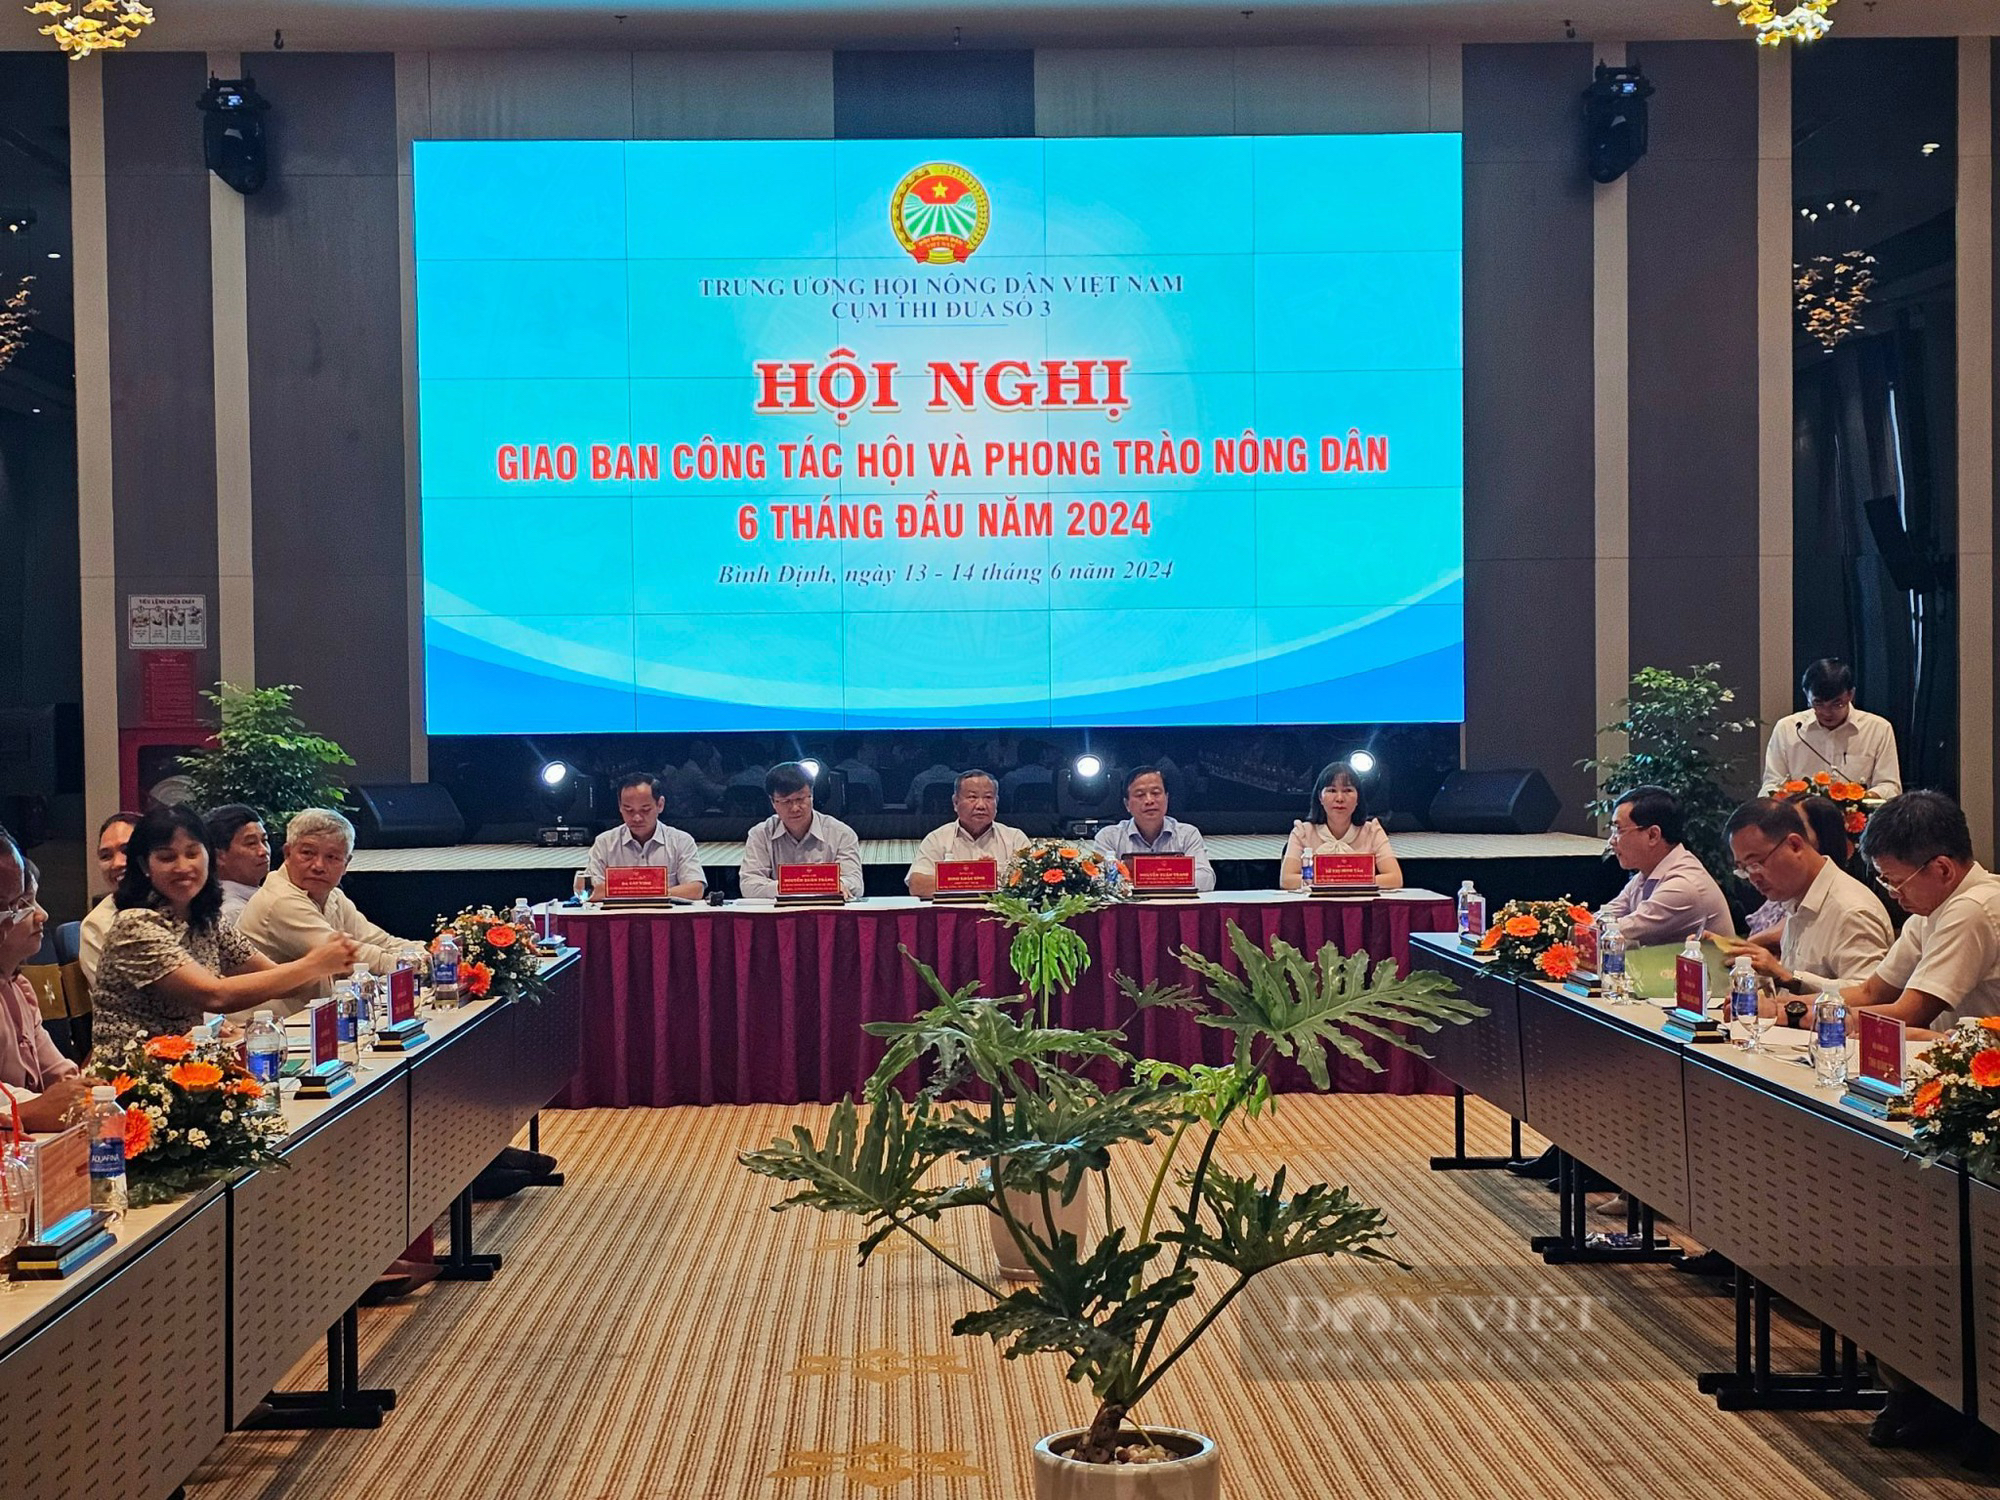 Phó Chủ tịch Hội NDVN Đinh Khắc Đính chủ trì hội nghị giao ban Cụm thi đua số 3 tổ chức tại Bình Định- Ảnh 1.